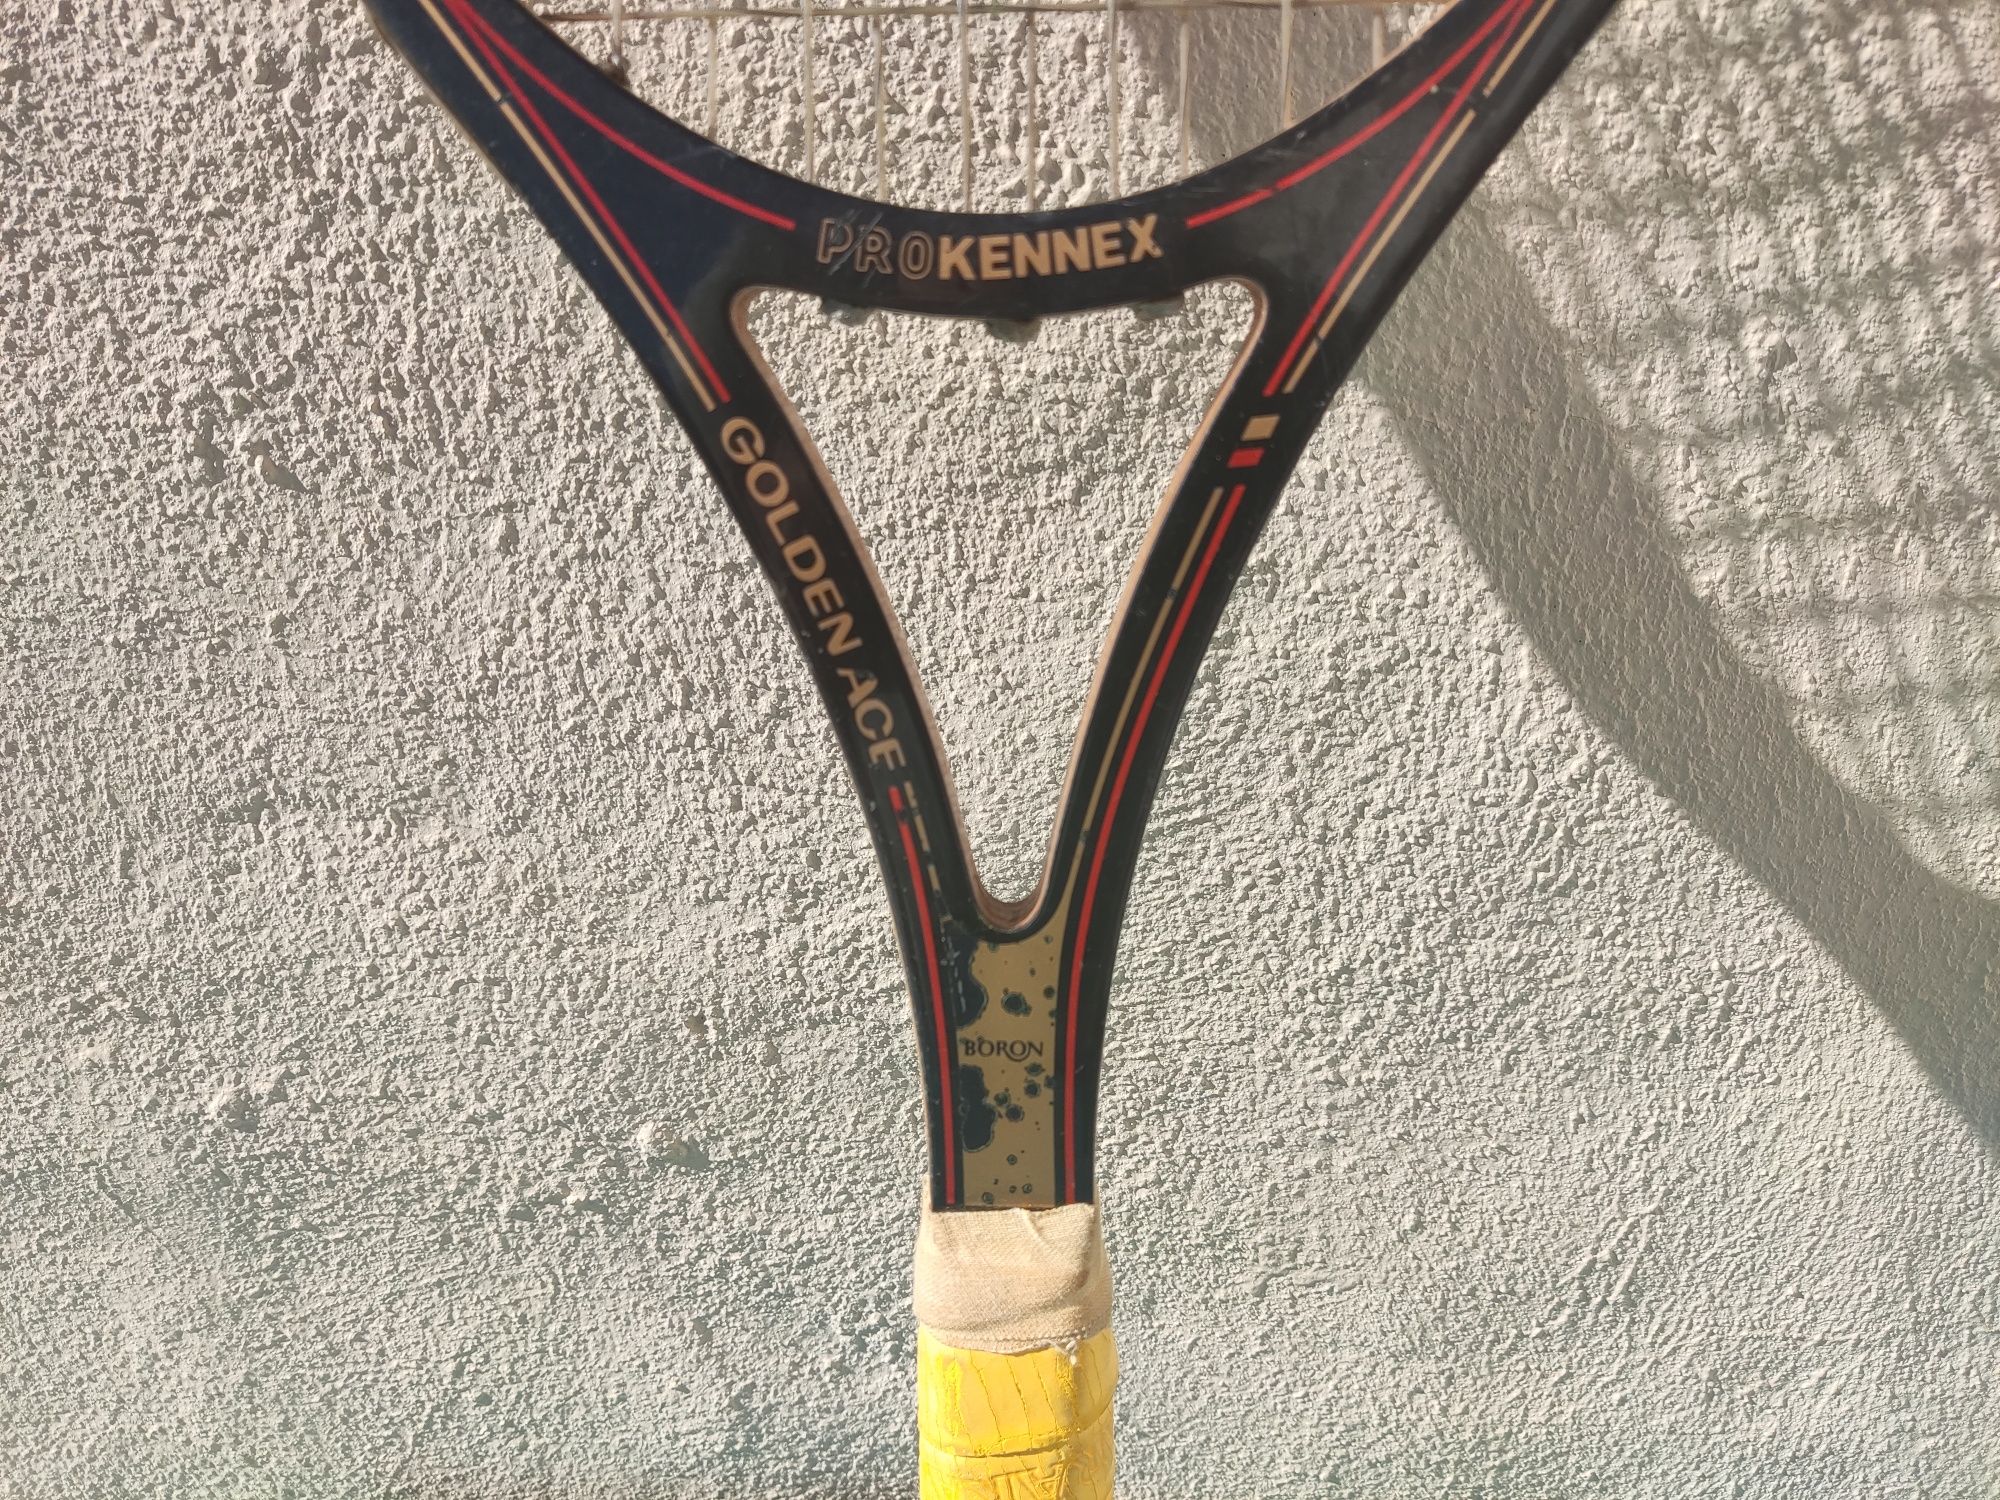 Raquete de ténis antiga Pro Kennex Boron "Golden Ace" Jose Luis Clerc